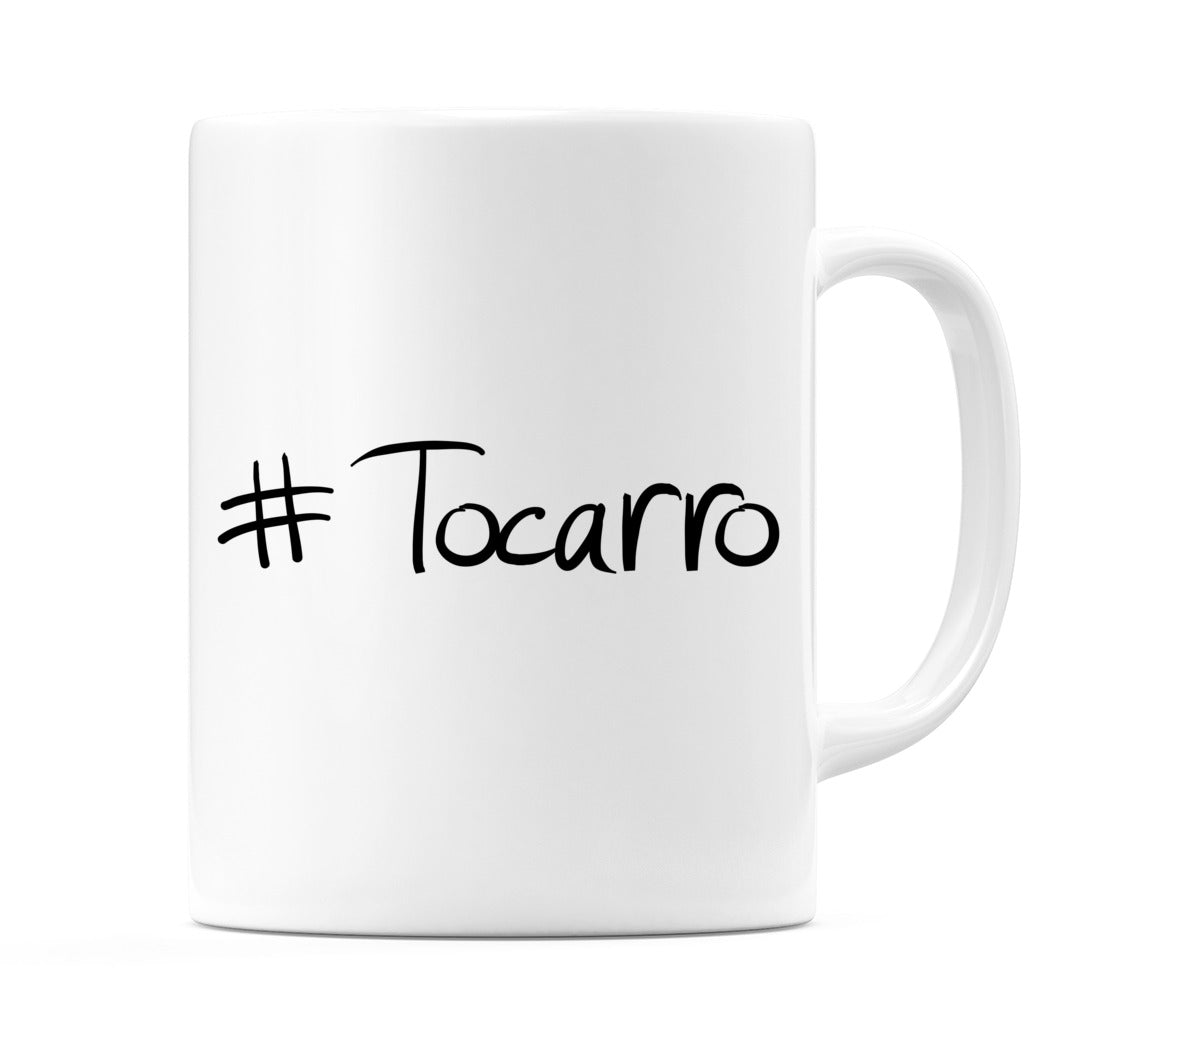 #Tocarro Mug